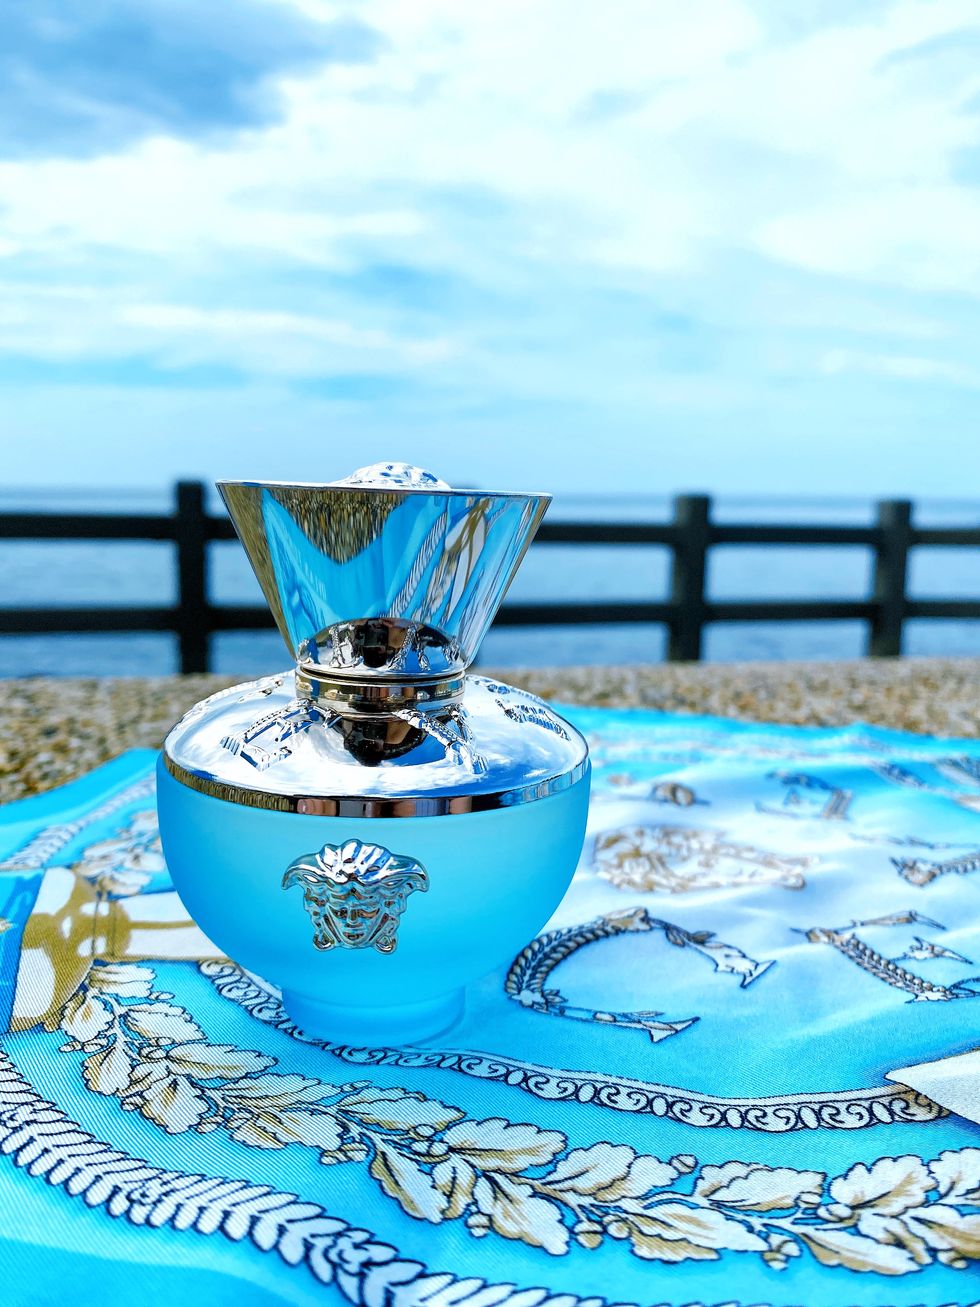 用香味一起去旅行！全新versace凡賽斯狄倫淡藍女性淡香水，溫柔吹拂過海洋的浪漫香氣，讓人一秒置身遙遠異國島嶼